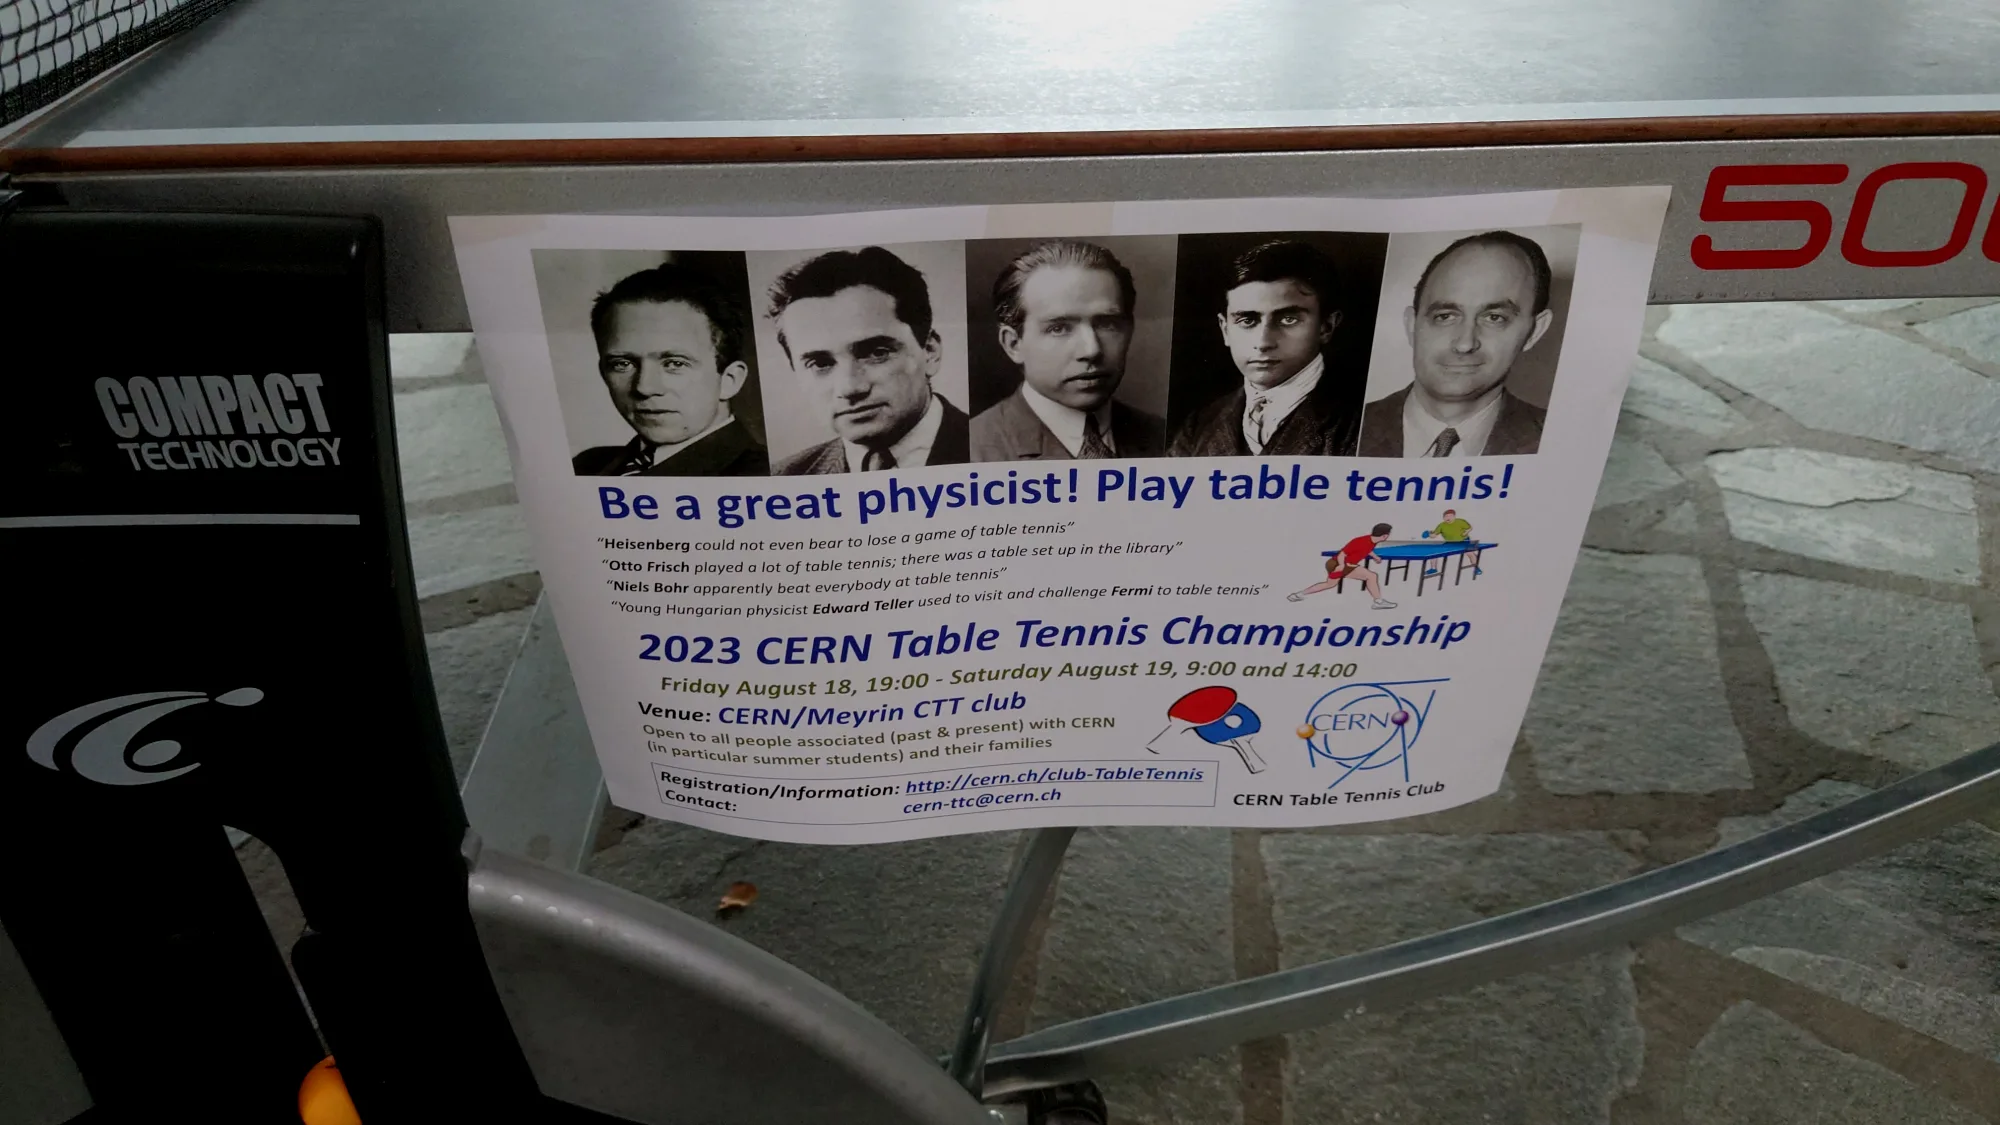 食堂乒乓球桌上贴着的乒乓球赛广告。大意是说玻尔等大物理学家都打得一手好乒乓，所以打乒乓能称为大物理学家，快来加入吧。